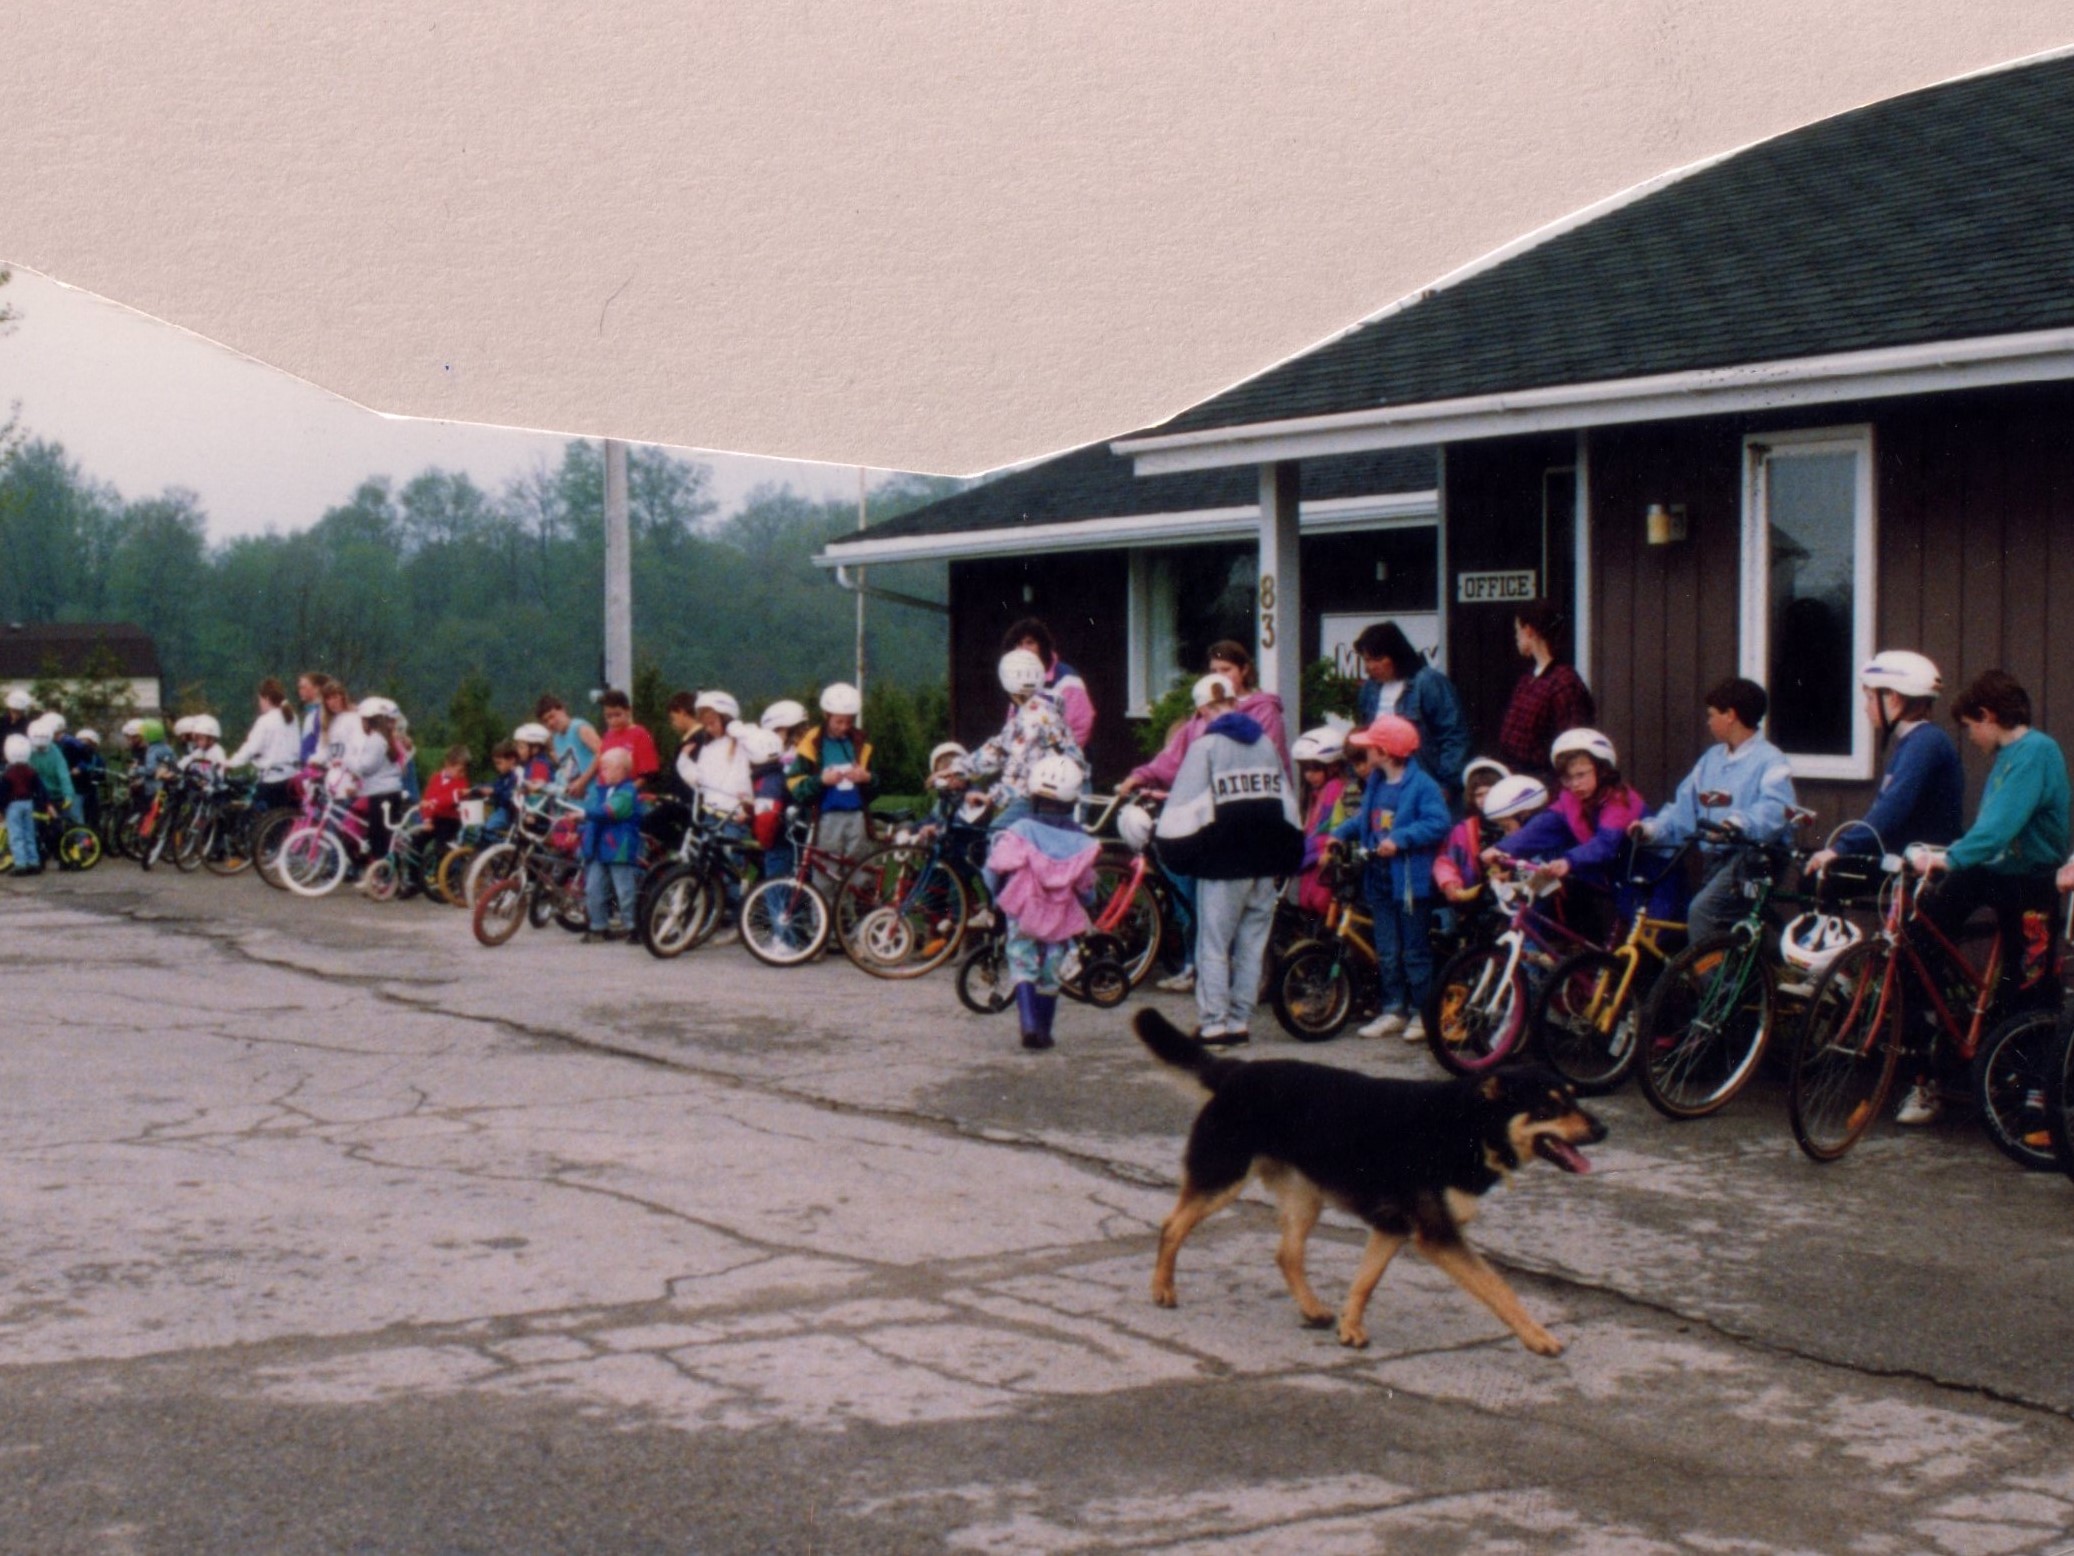 1993 Bike Rodeo - Canine Patrol